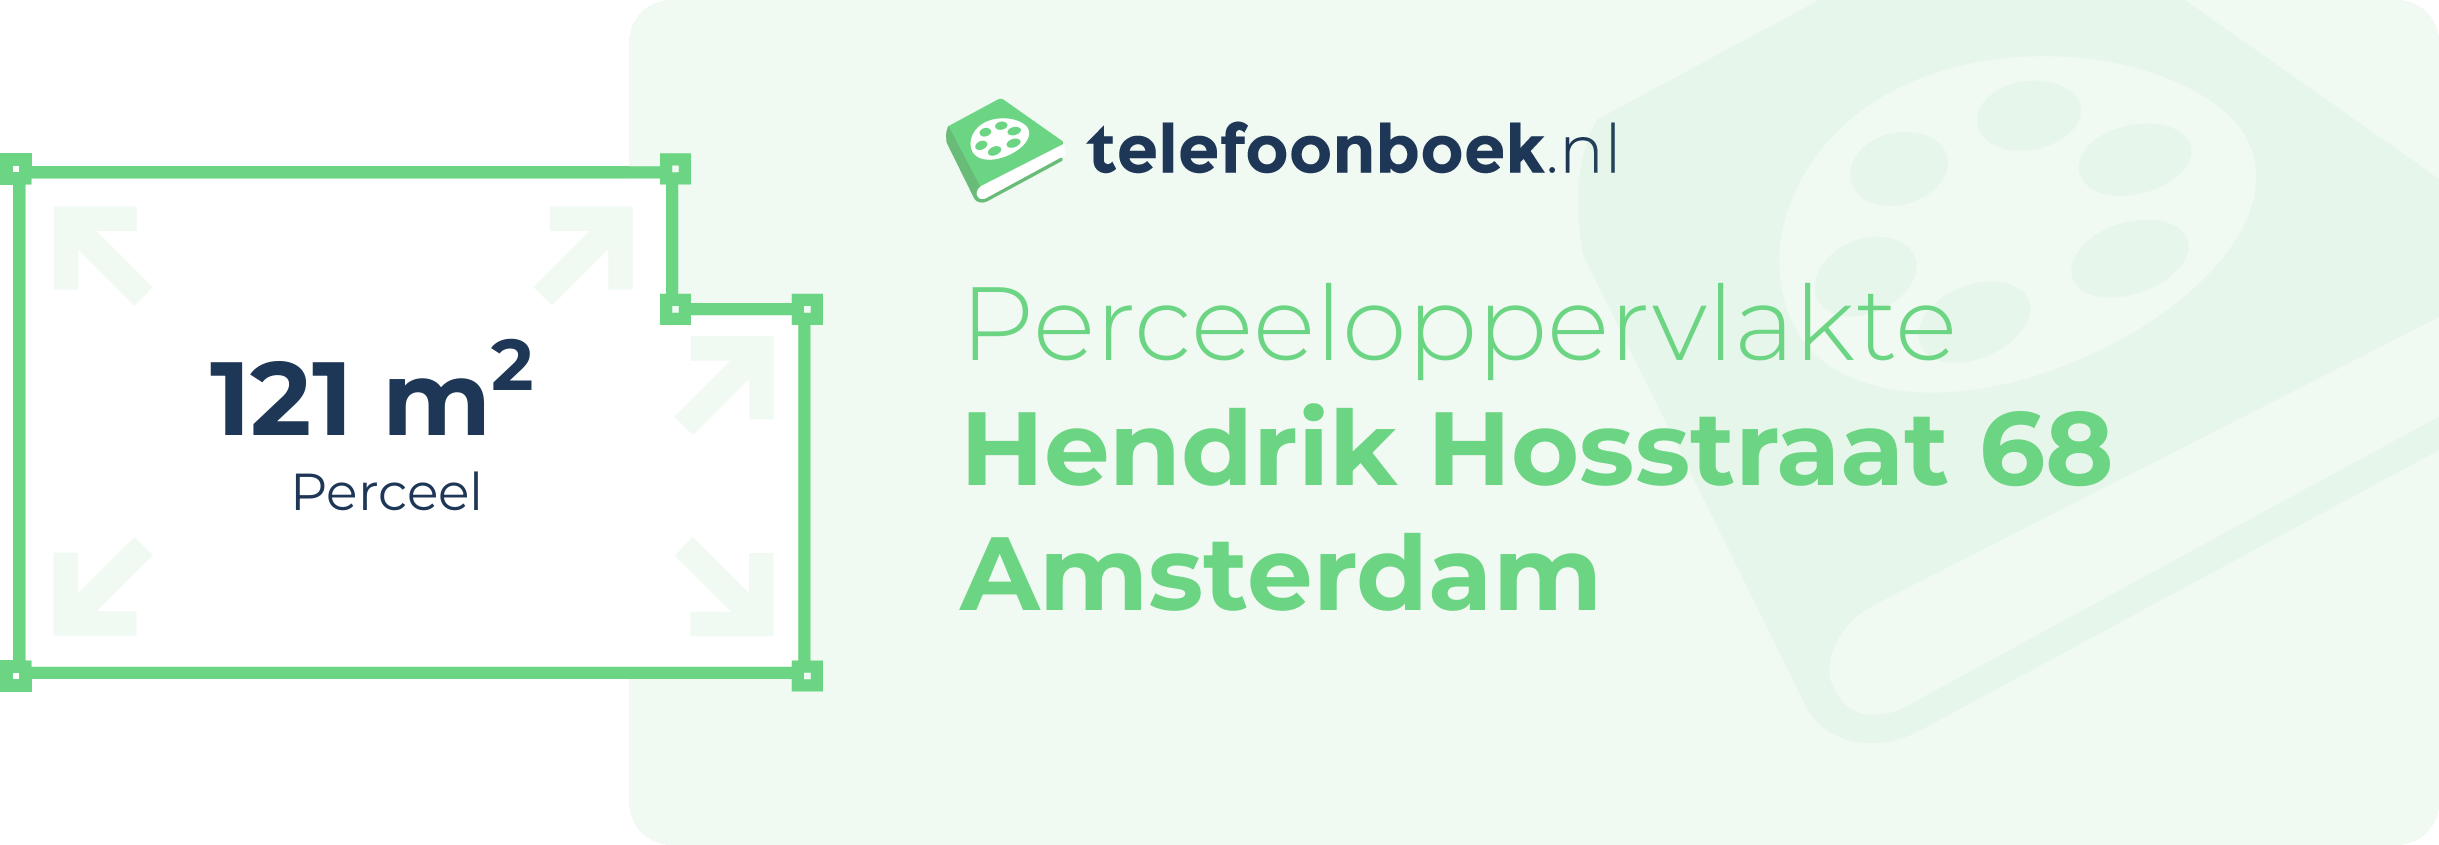 Perceeloppervlakte Hendrik Hosstraat 68 Amsterdam